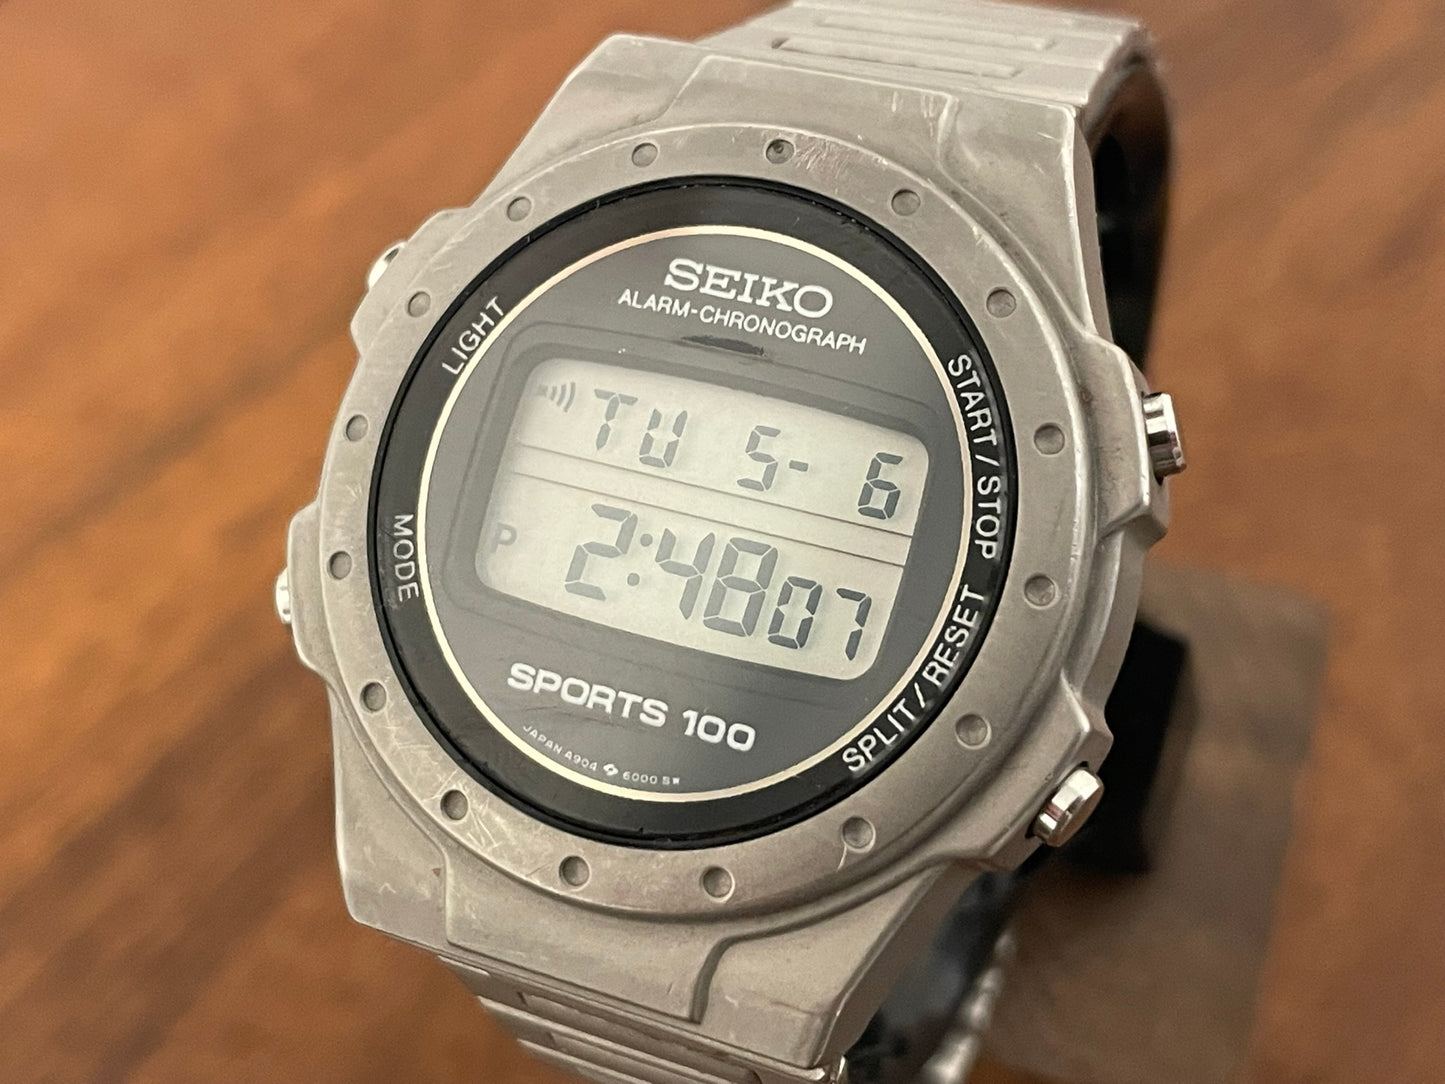 (1985) Seiko A904-6000 Alarm-Chronograph Sports 100